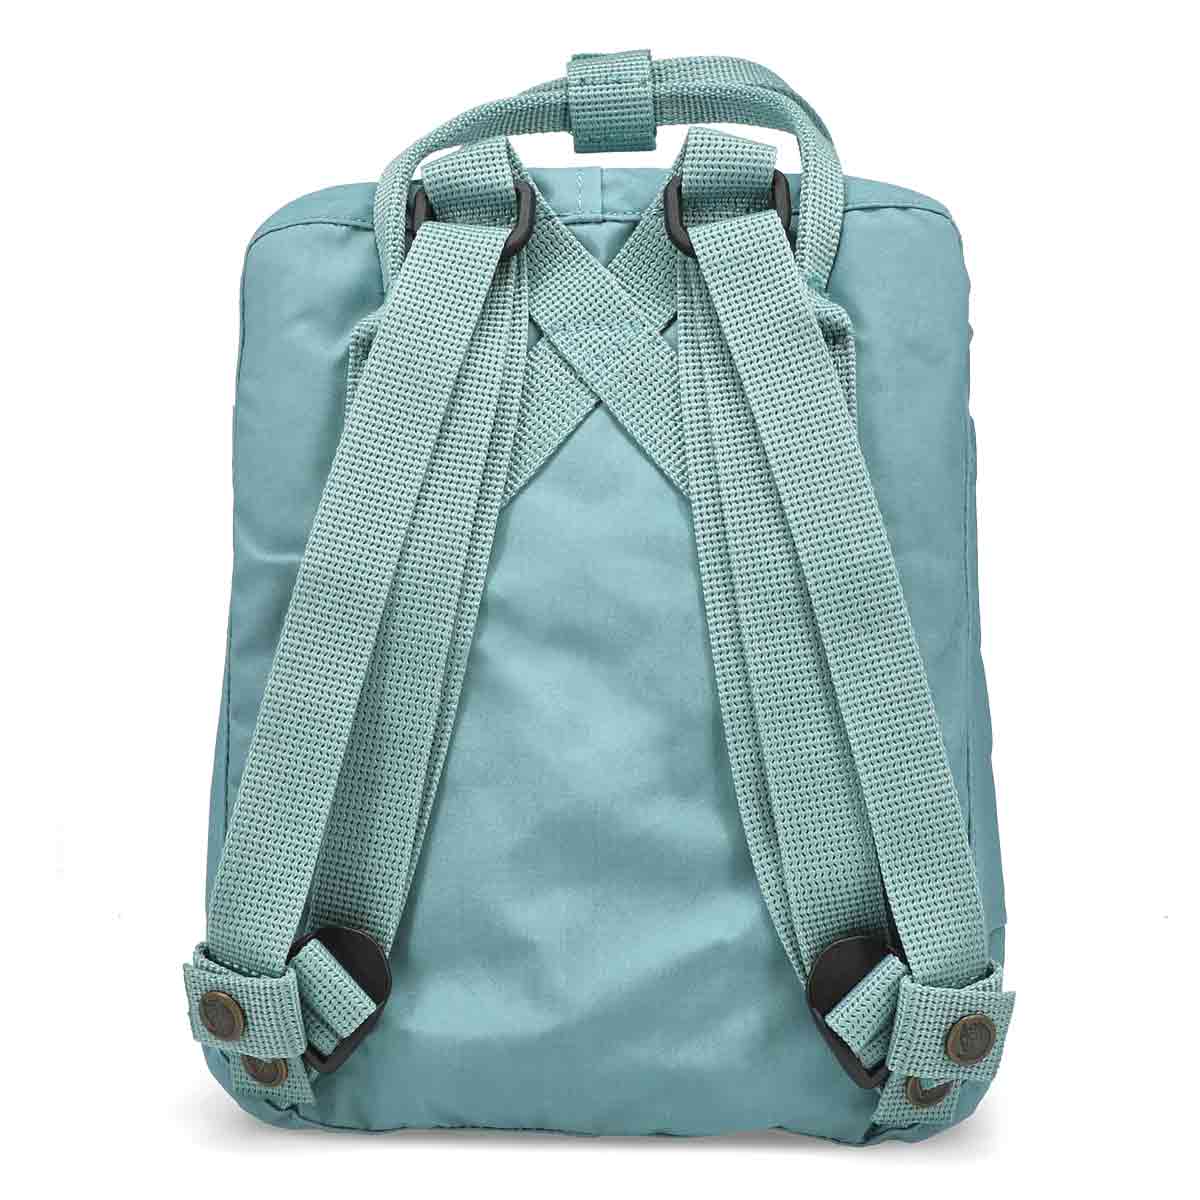 Fjallraven Kanken Mini Backpack - Sky Blue